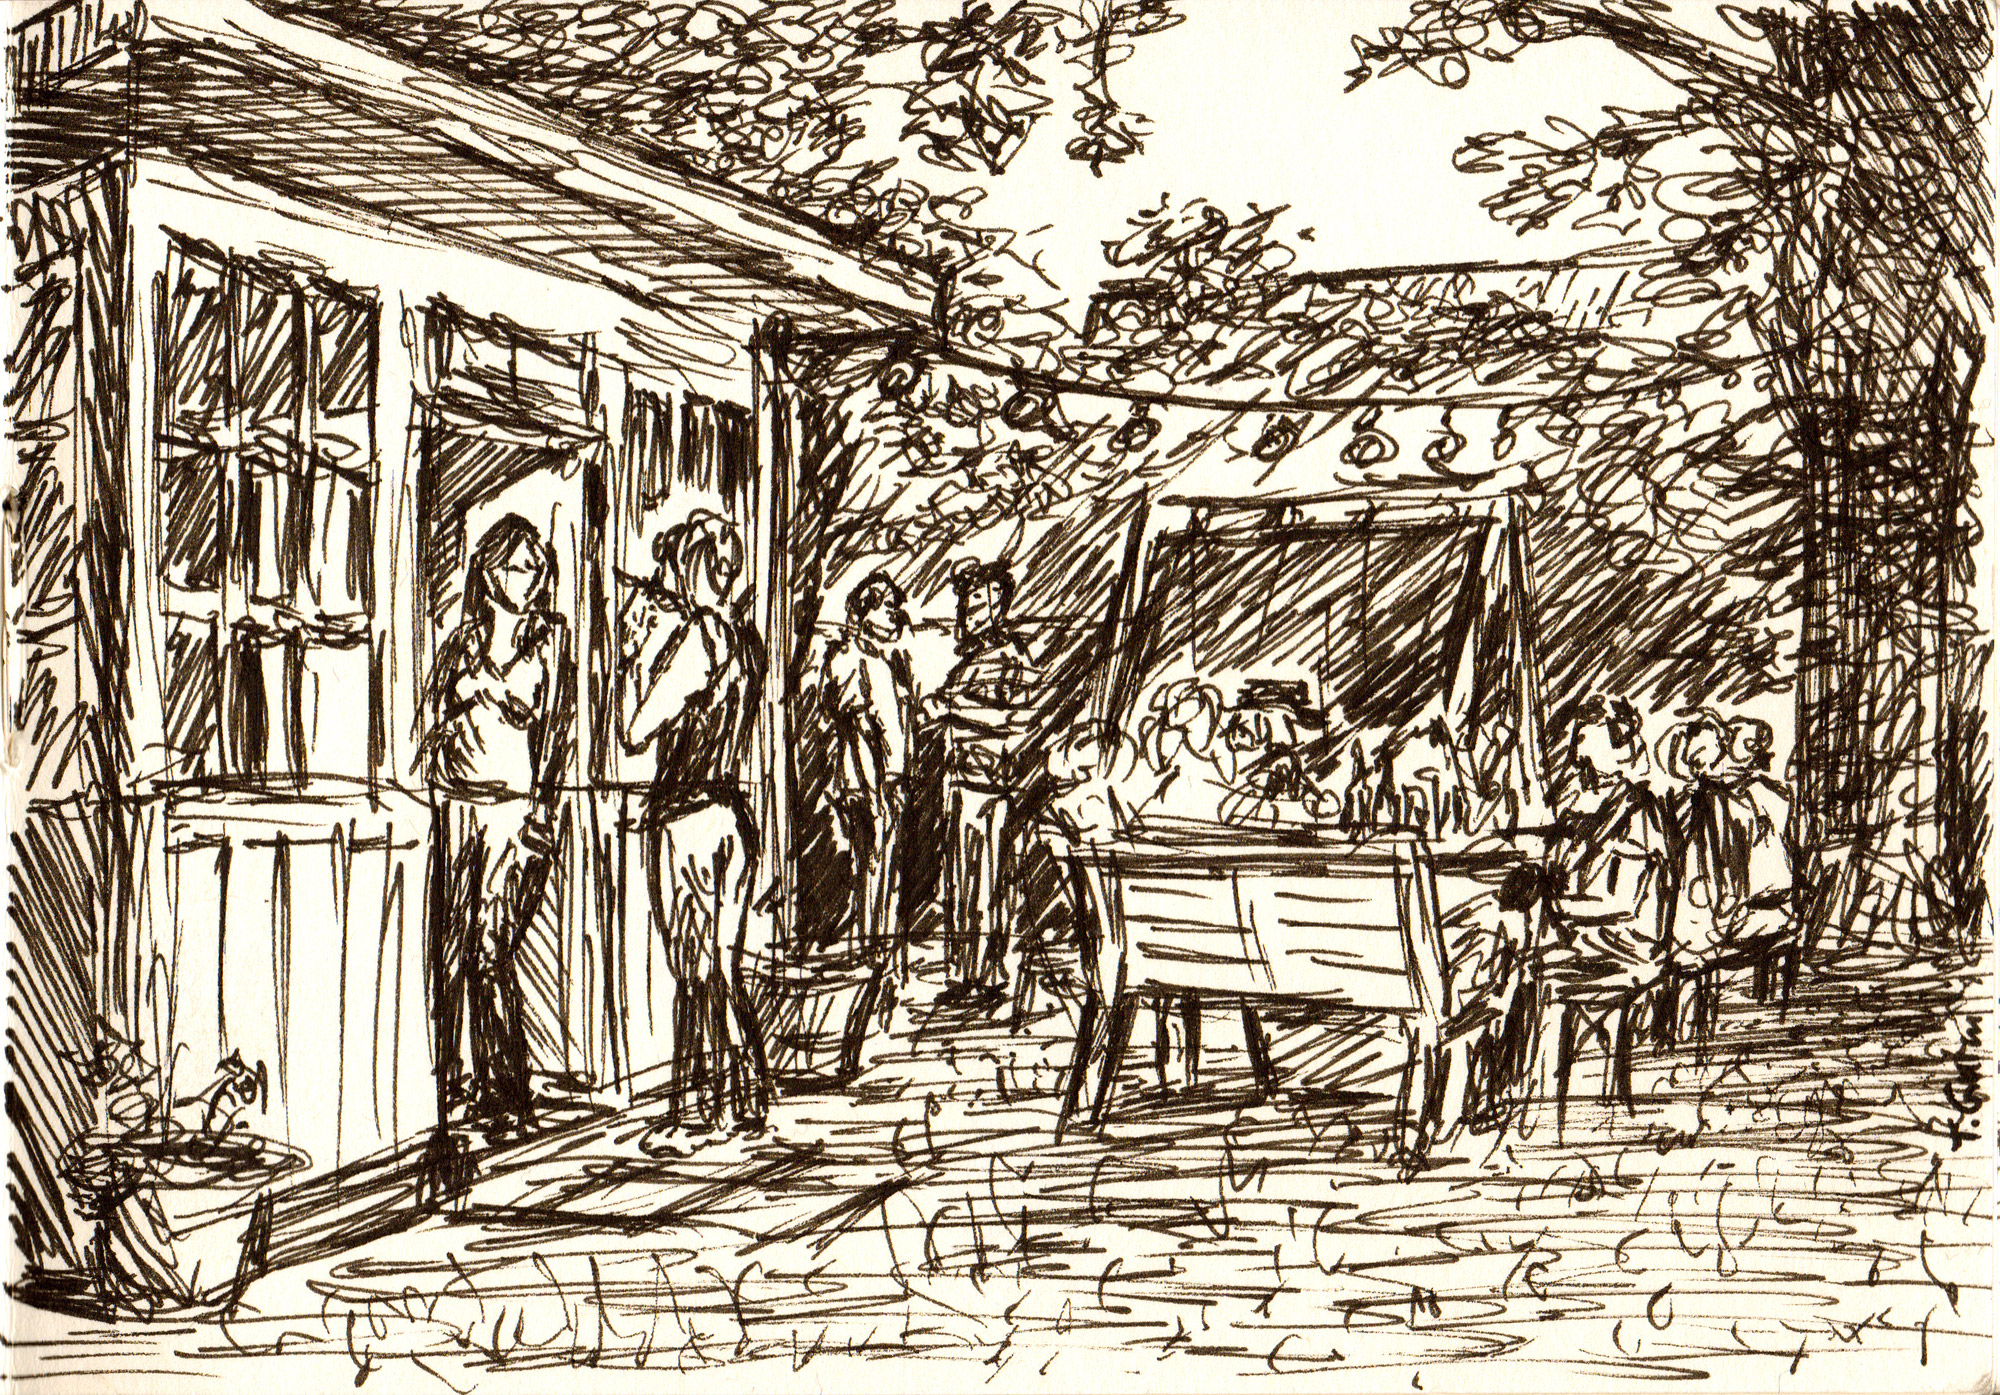 Zeichnung einer Gartenfeier mit Menschen, Bäumen und Lichterkette